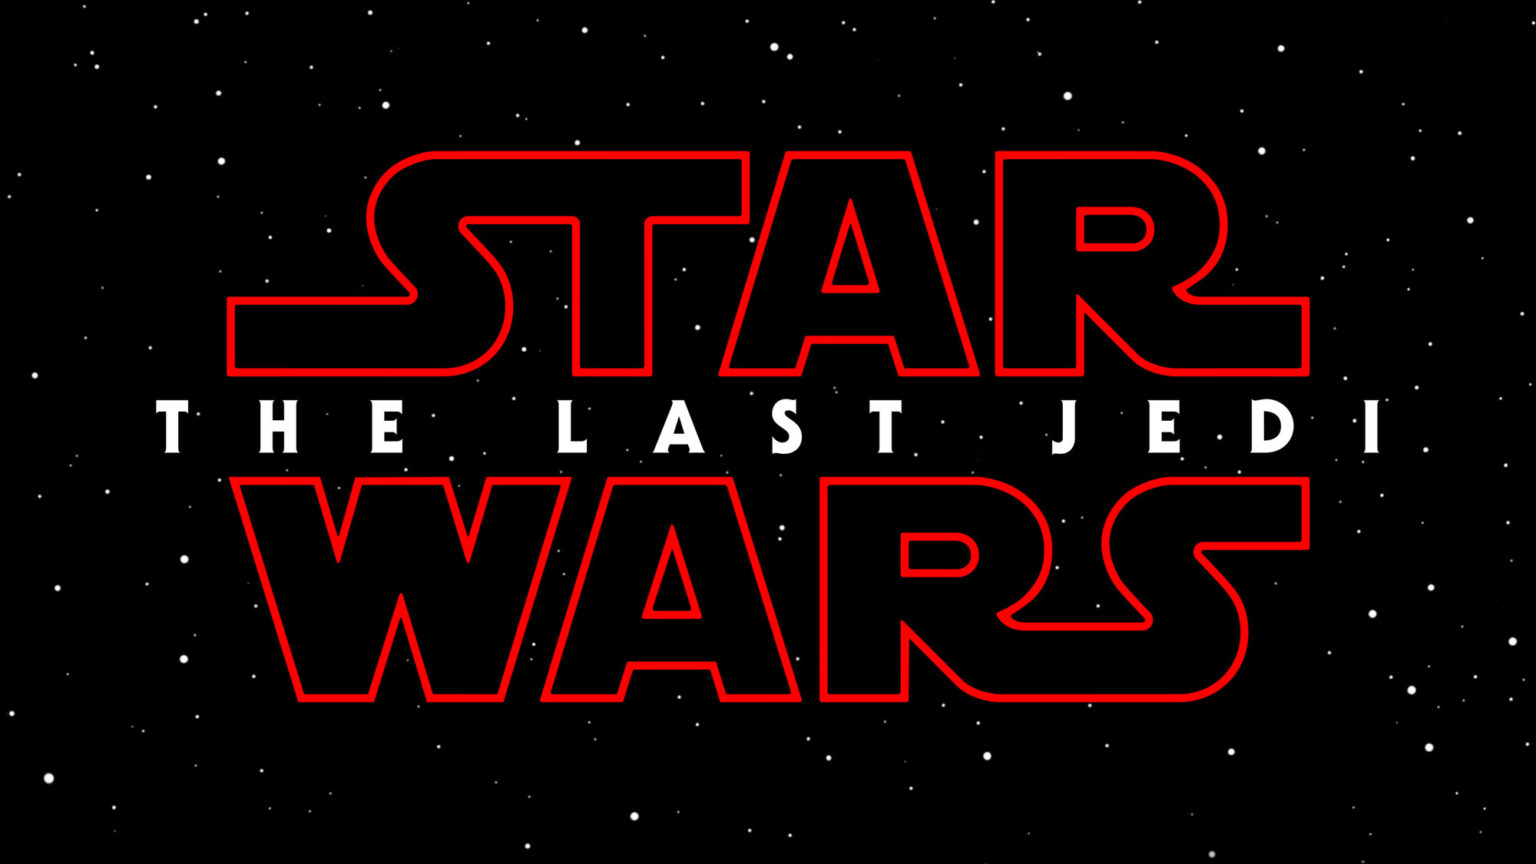 Star Wars: The Last Jedi è il titolo dell’Episodio VIII di Star Wars